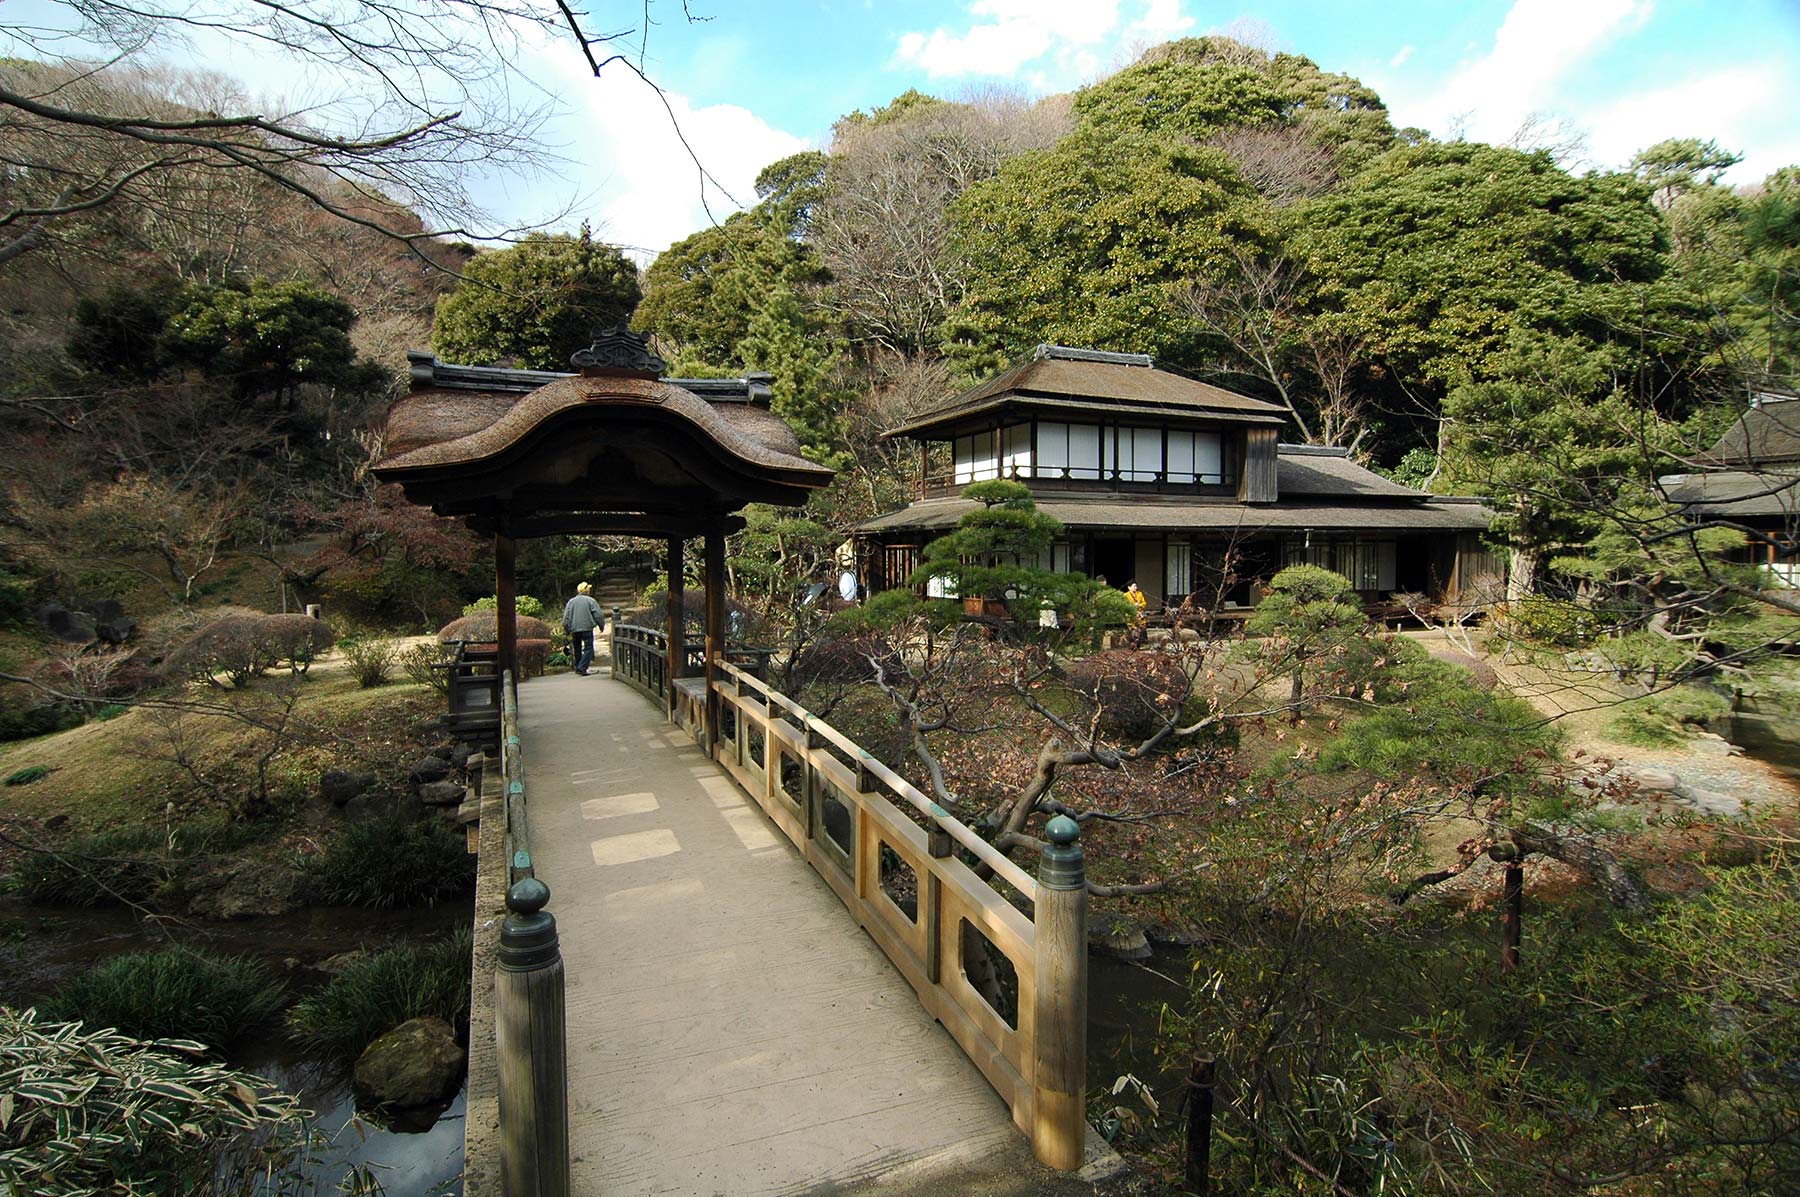 Sankei-en garden @f5 12mm D70